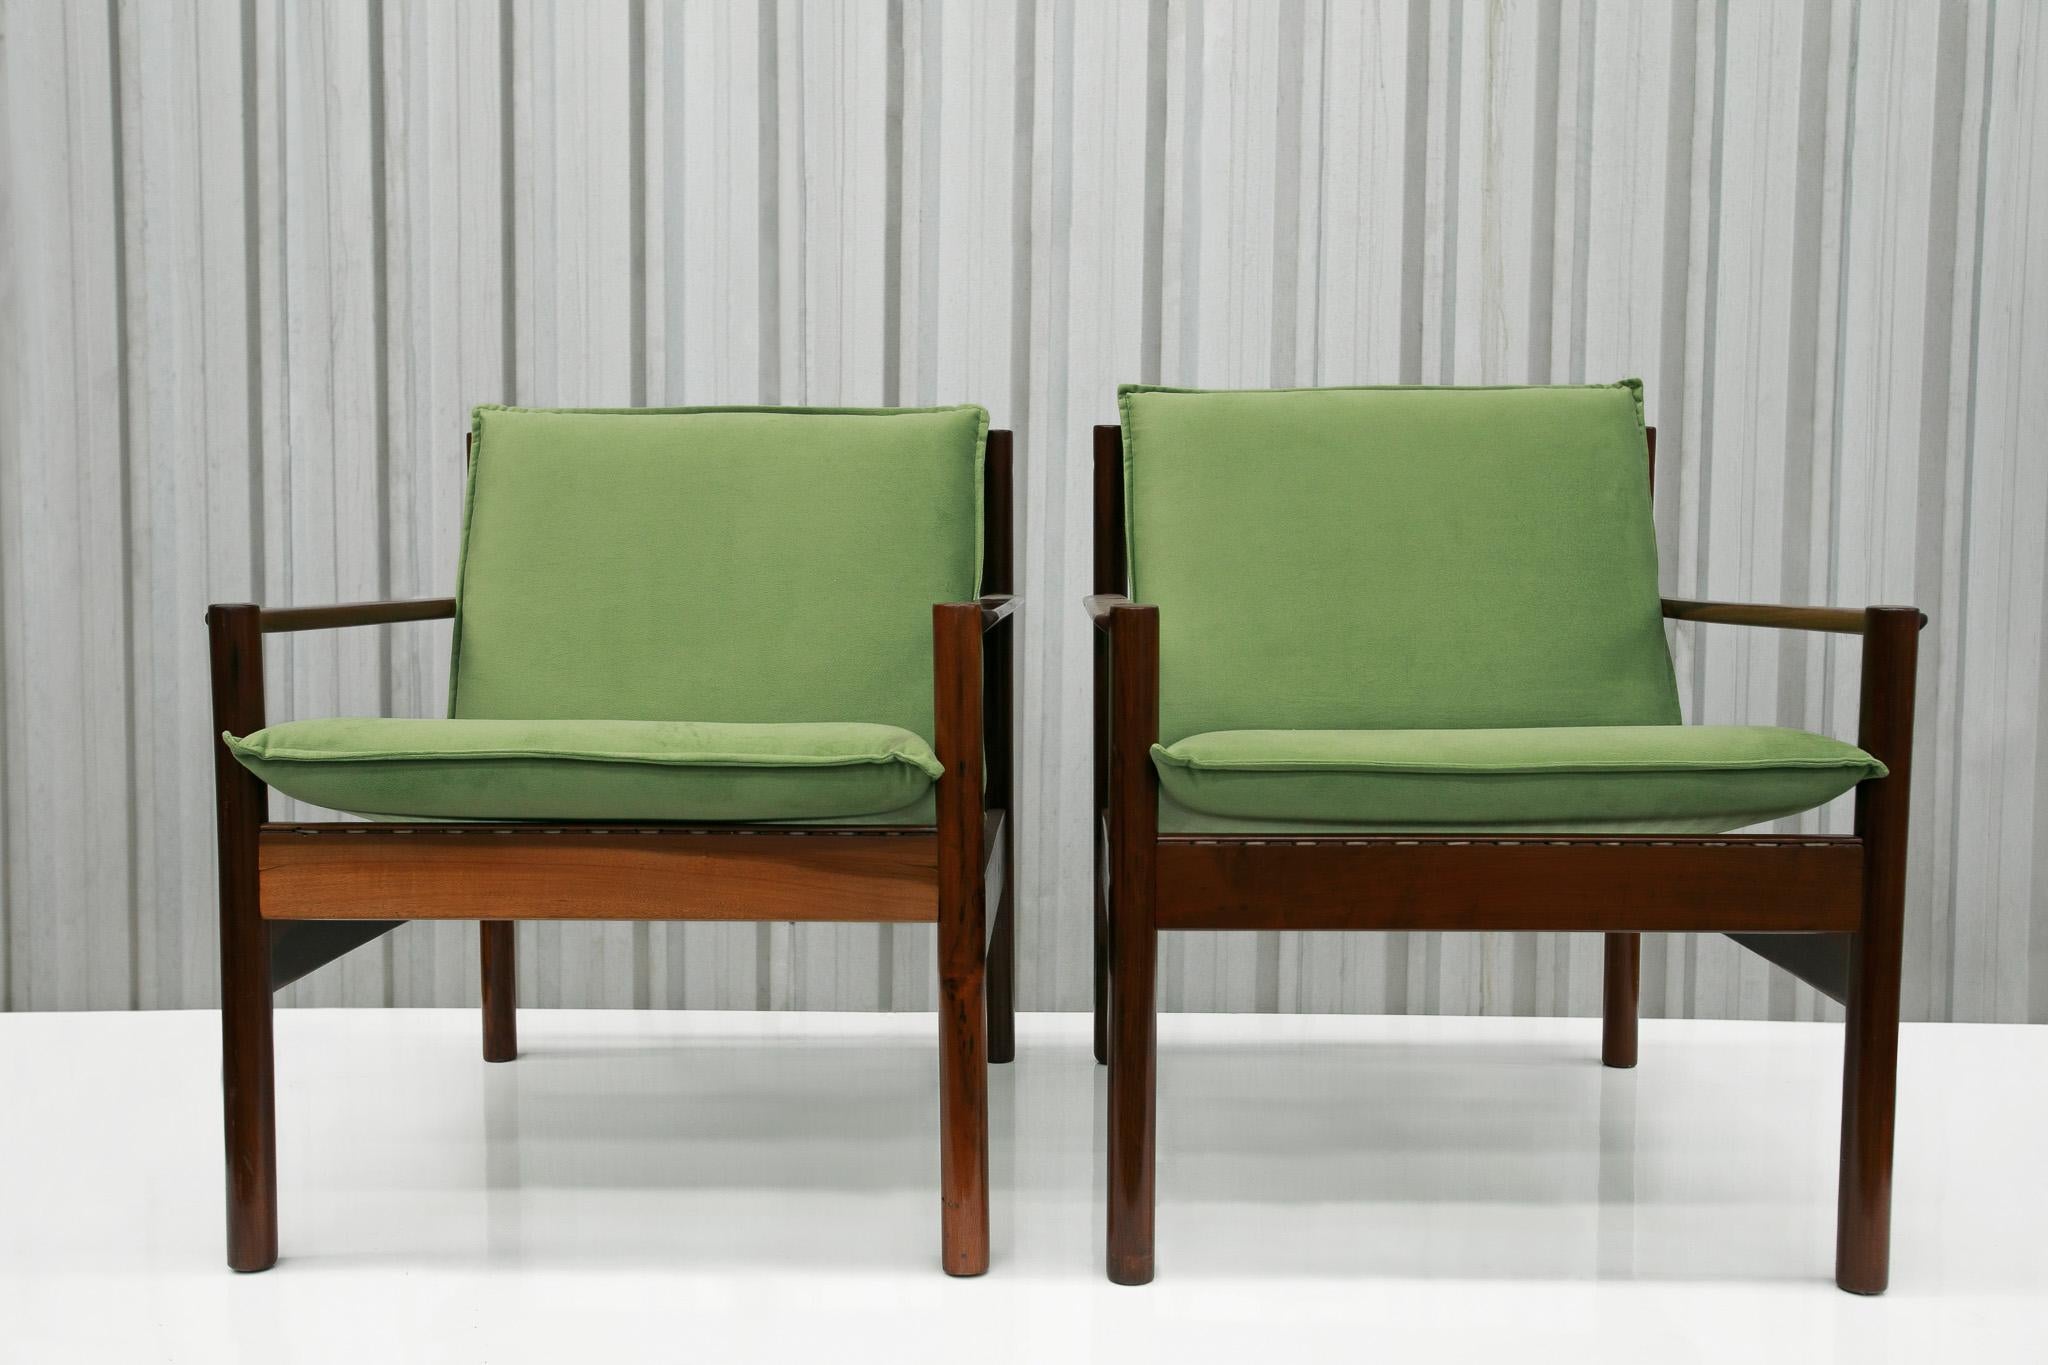 Disponible aujourd'hui, ce fauteuil moderne brésilien en bois dur et tissu conçu par Michel Arnoult, années 1960, n'est rien de moins que spectaculaire !

Elles ont été conçues dans les années 1960 et sont appelées 